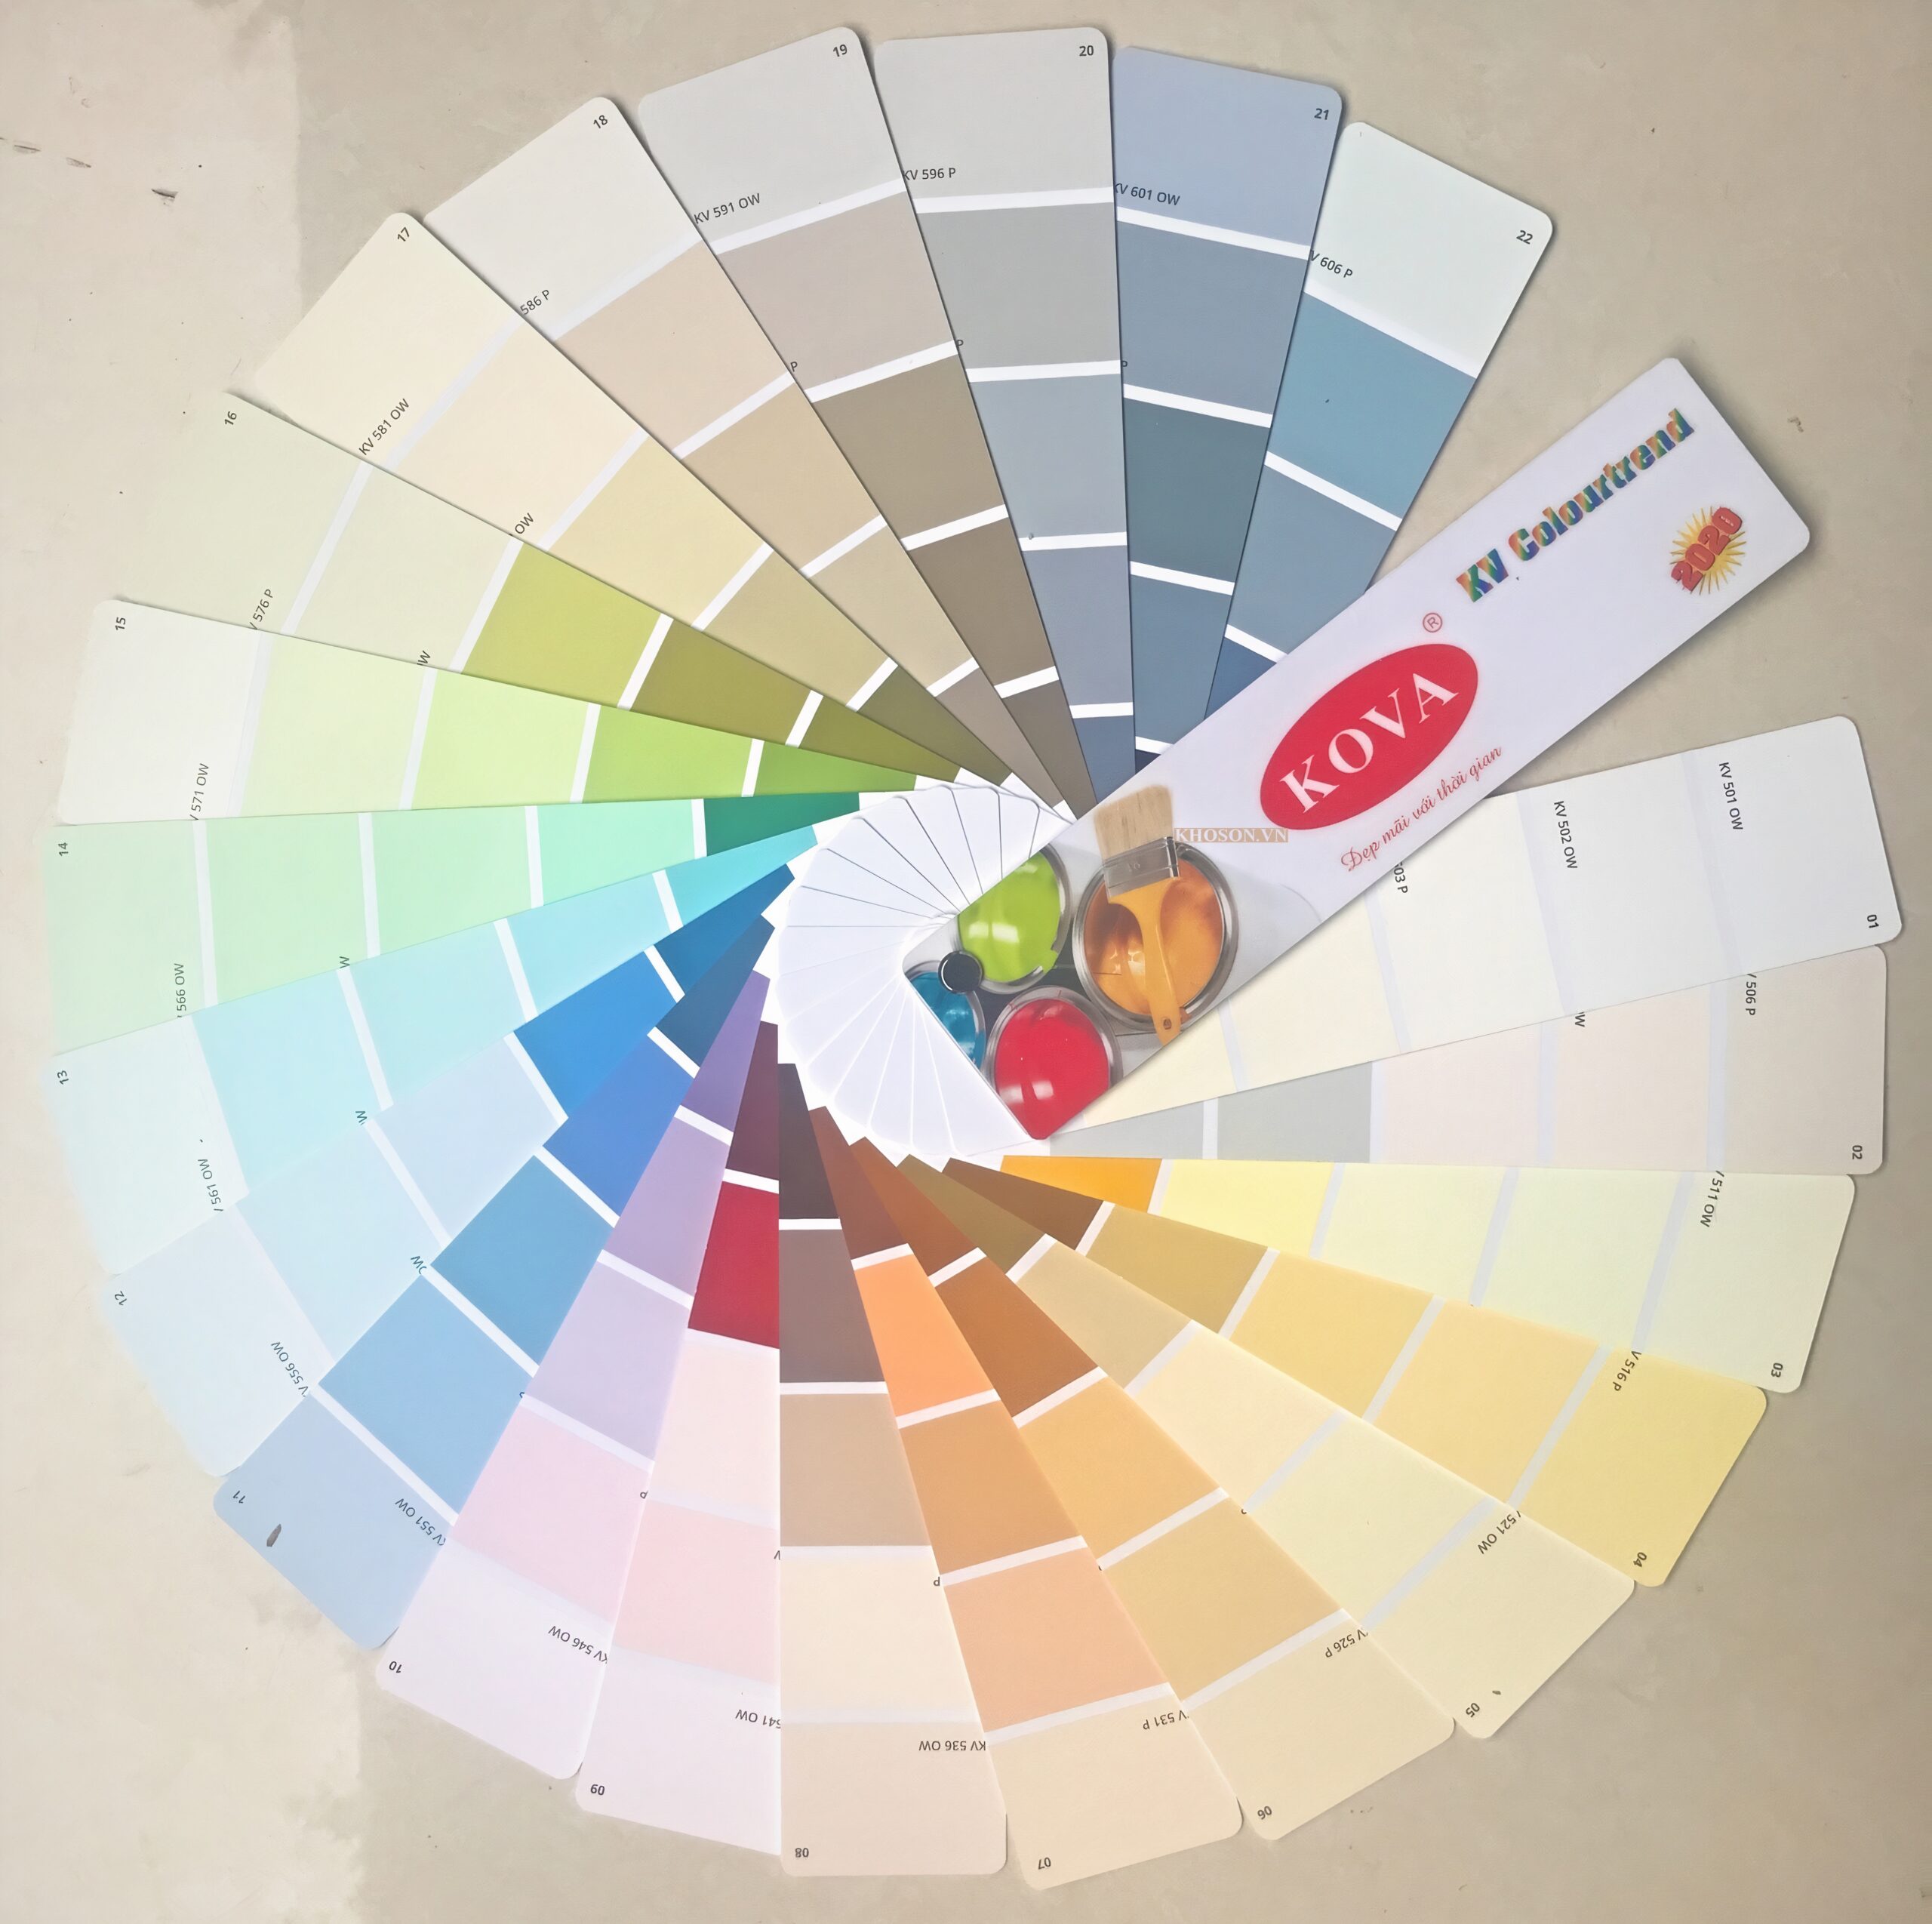 Bạn đang tìm kiếm bảng màu sơn Kova tại Thành phố Vinh, Nghệ An? Chúng tôi sẽ giúp bạn tìm thấy sự lựa chọn hoàn hảo cho ngôi nhà của bạn với bảng màu sắc đa dạng và phong phú của sơn Kova.